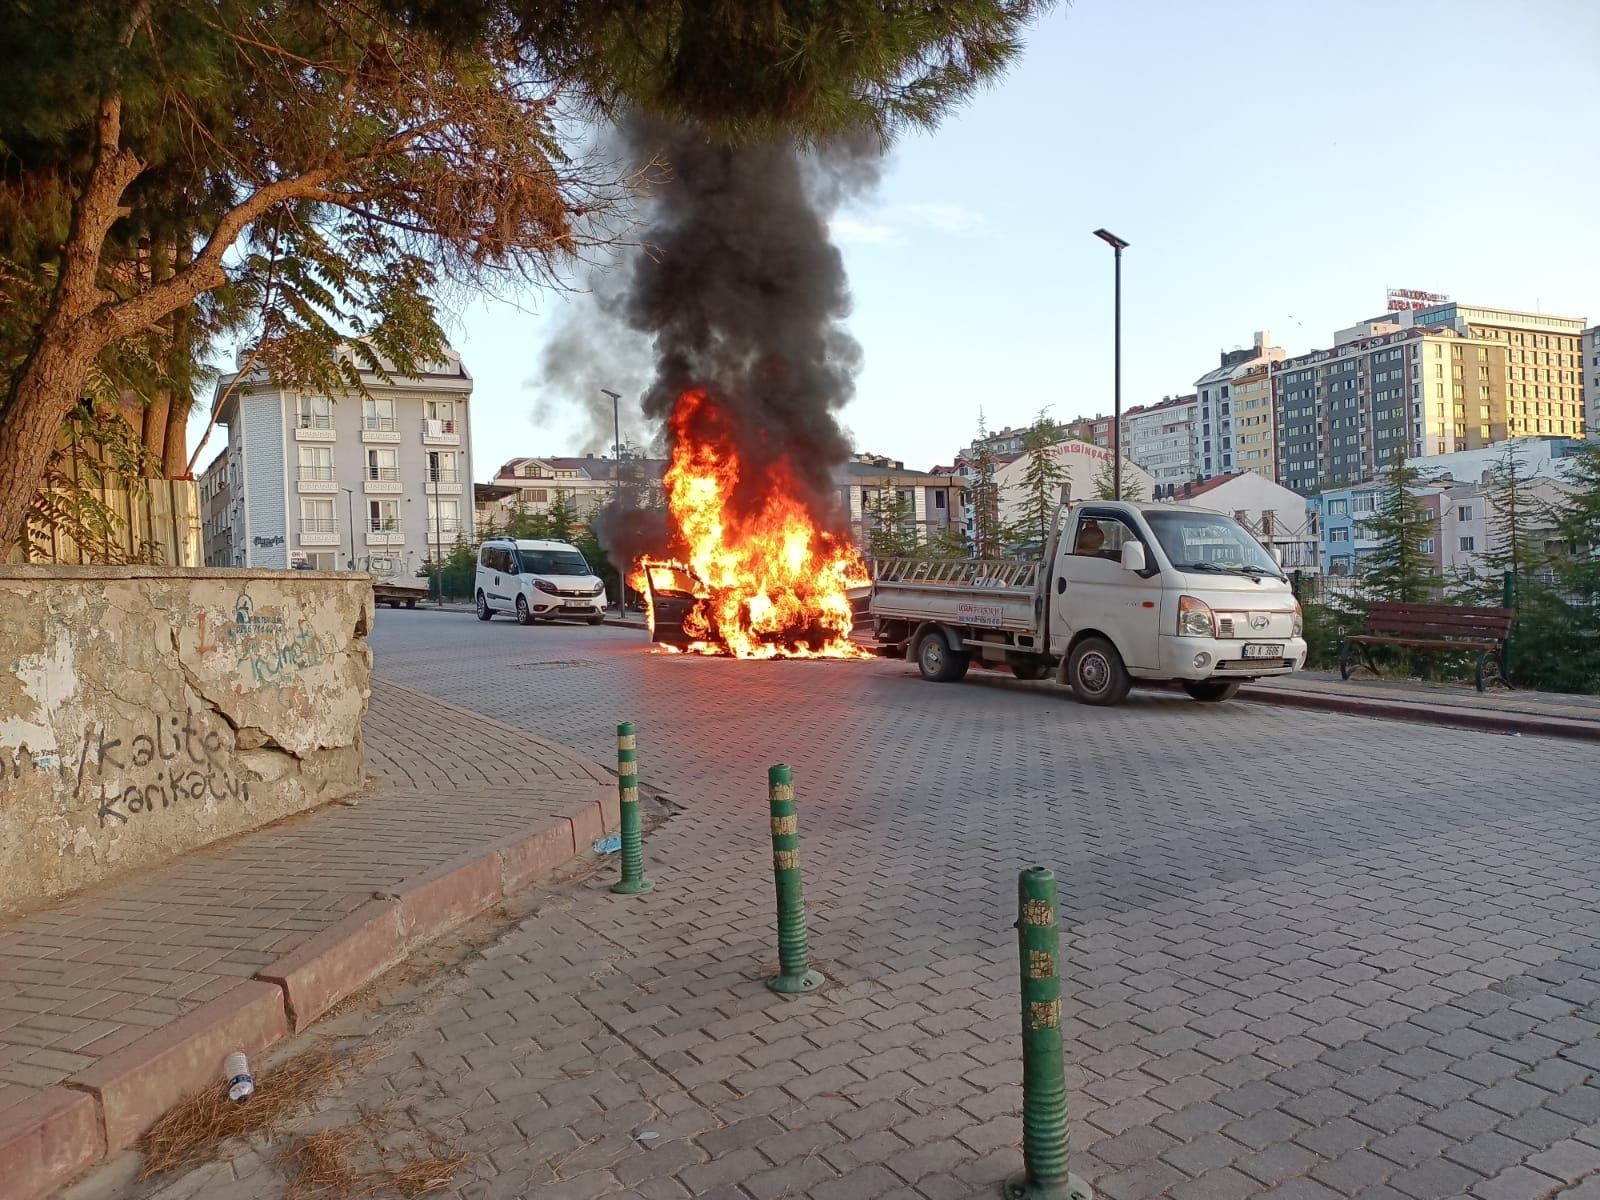 Park halindeki araç alev alev yandı